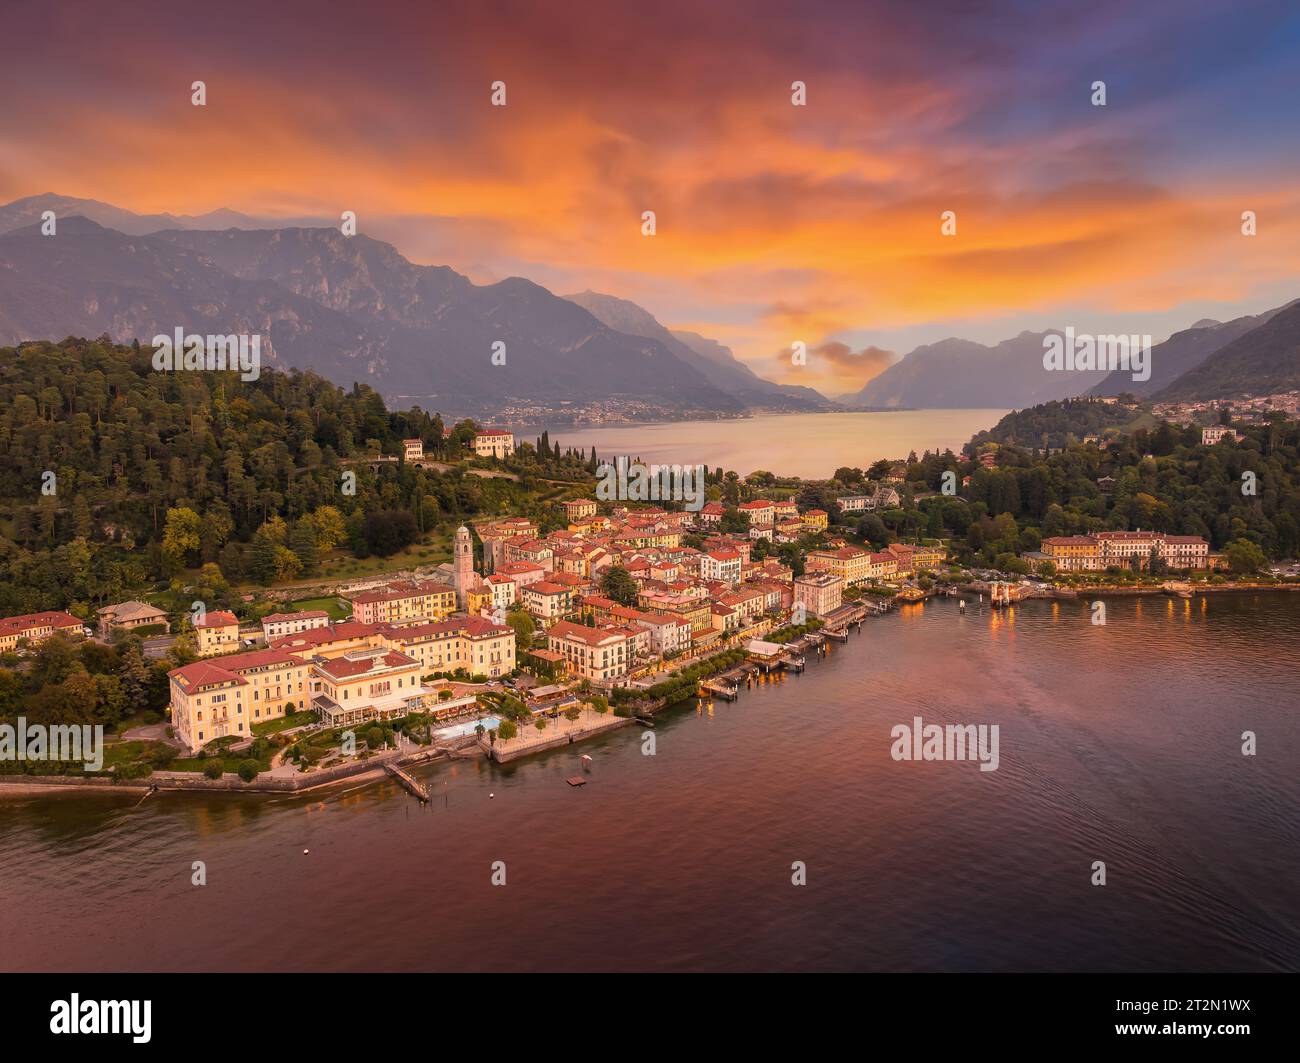 Paysage avec la ville de Bellagio dans la région du lac de Côme, Italie Banque D'Images